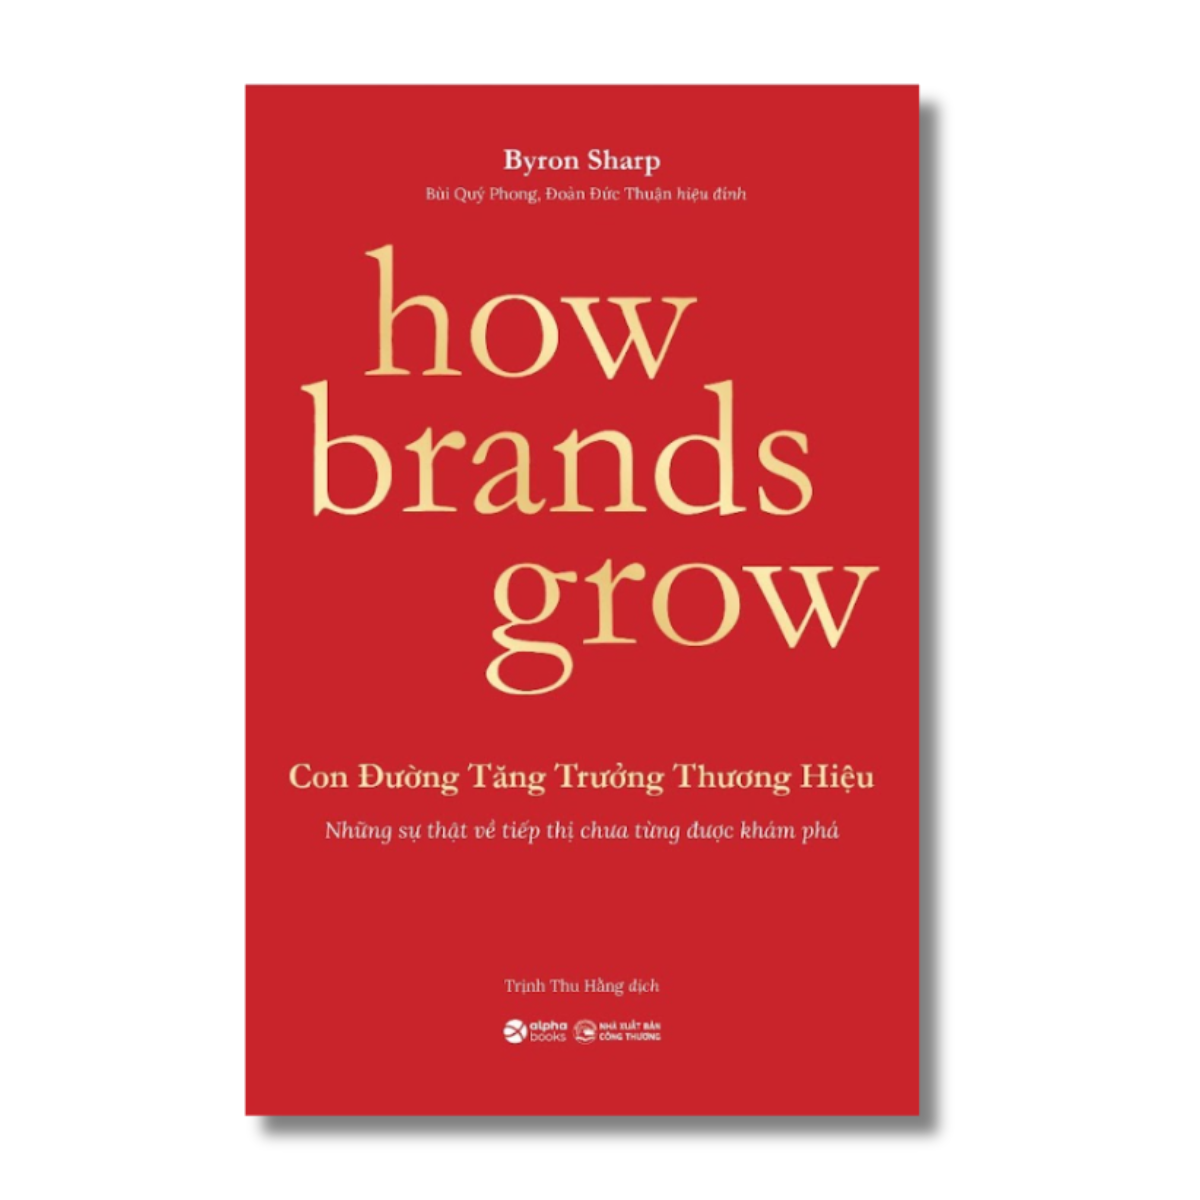 How Brands Grow - Con Đường Tăng Trưởng Thương Hiệu - KHÁM PHÁ - Bản Quyền